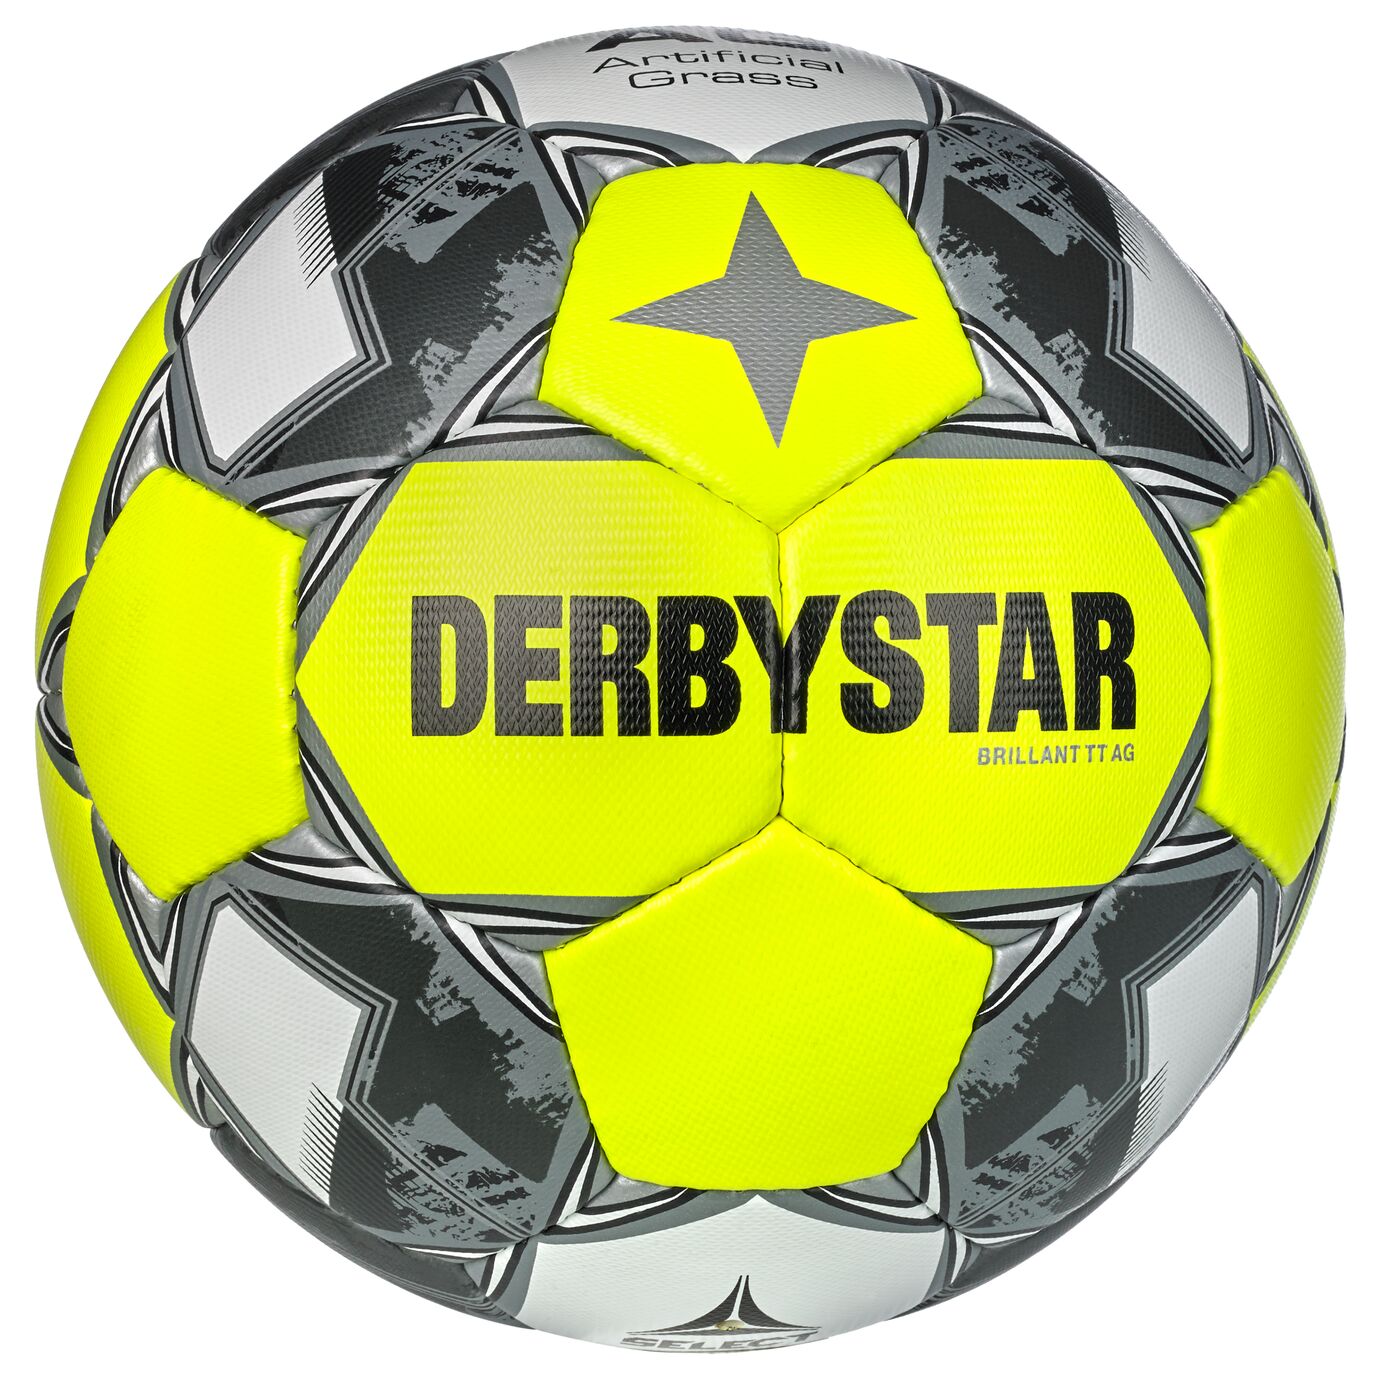 DERBYSTAR FB-BRILLANT TT AG Trainingsball gelb/silber 5